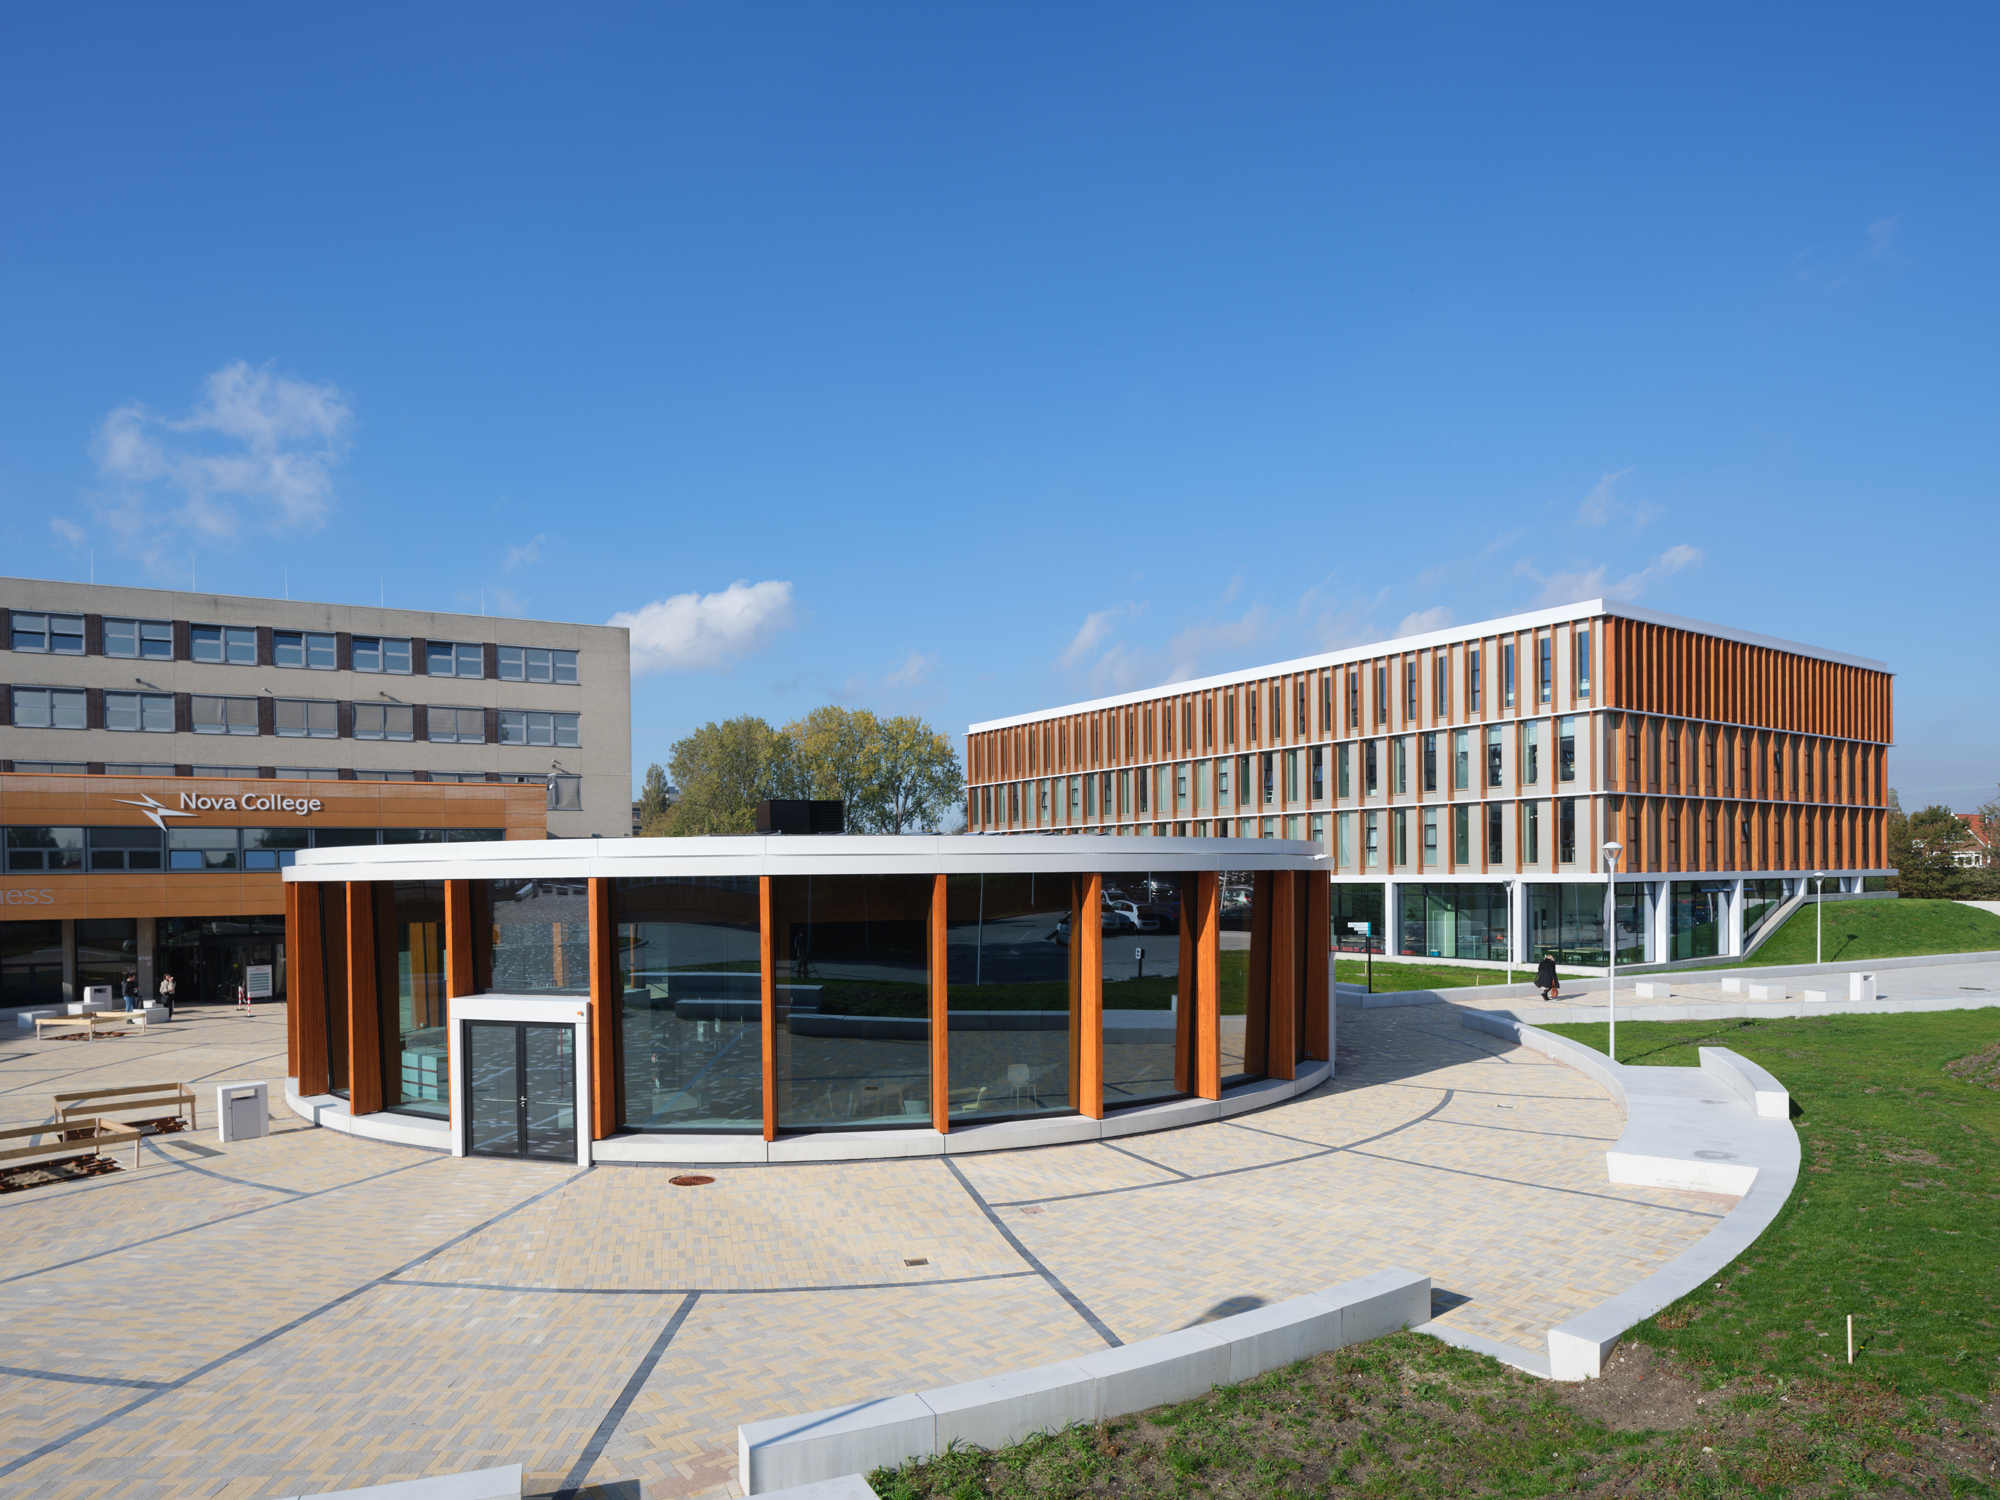 ‘Nieuwbouw Nova College draagt bij aan kwaliteit onderwijs’